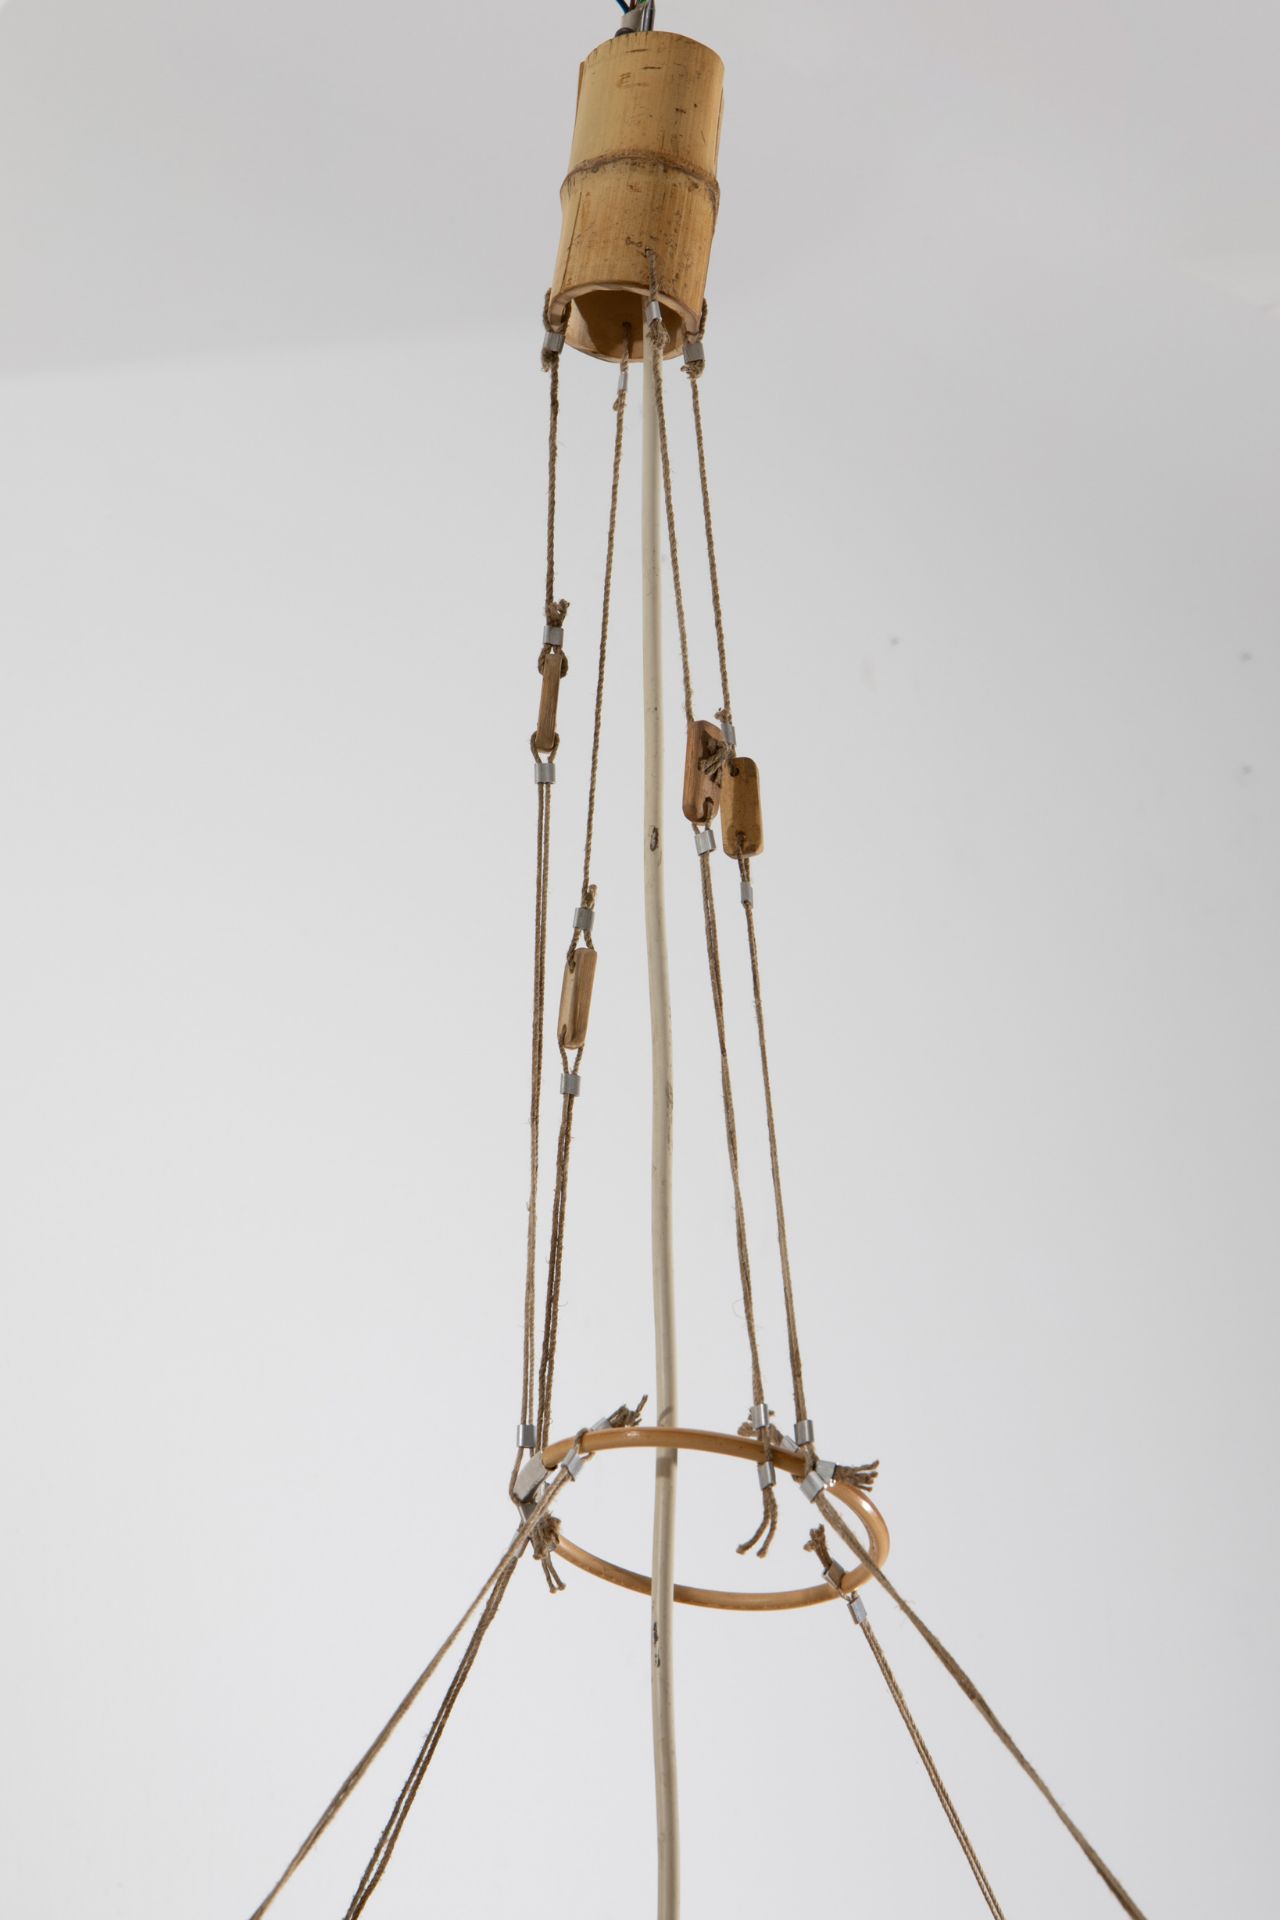 Ingo Maurer, Design M, Pendant lamp model Uchiwa / Yotsuba - Image 4 of 6